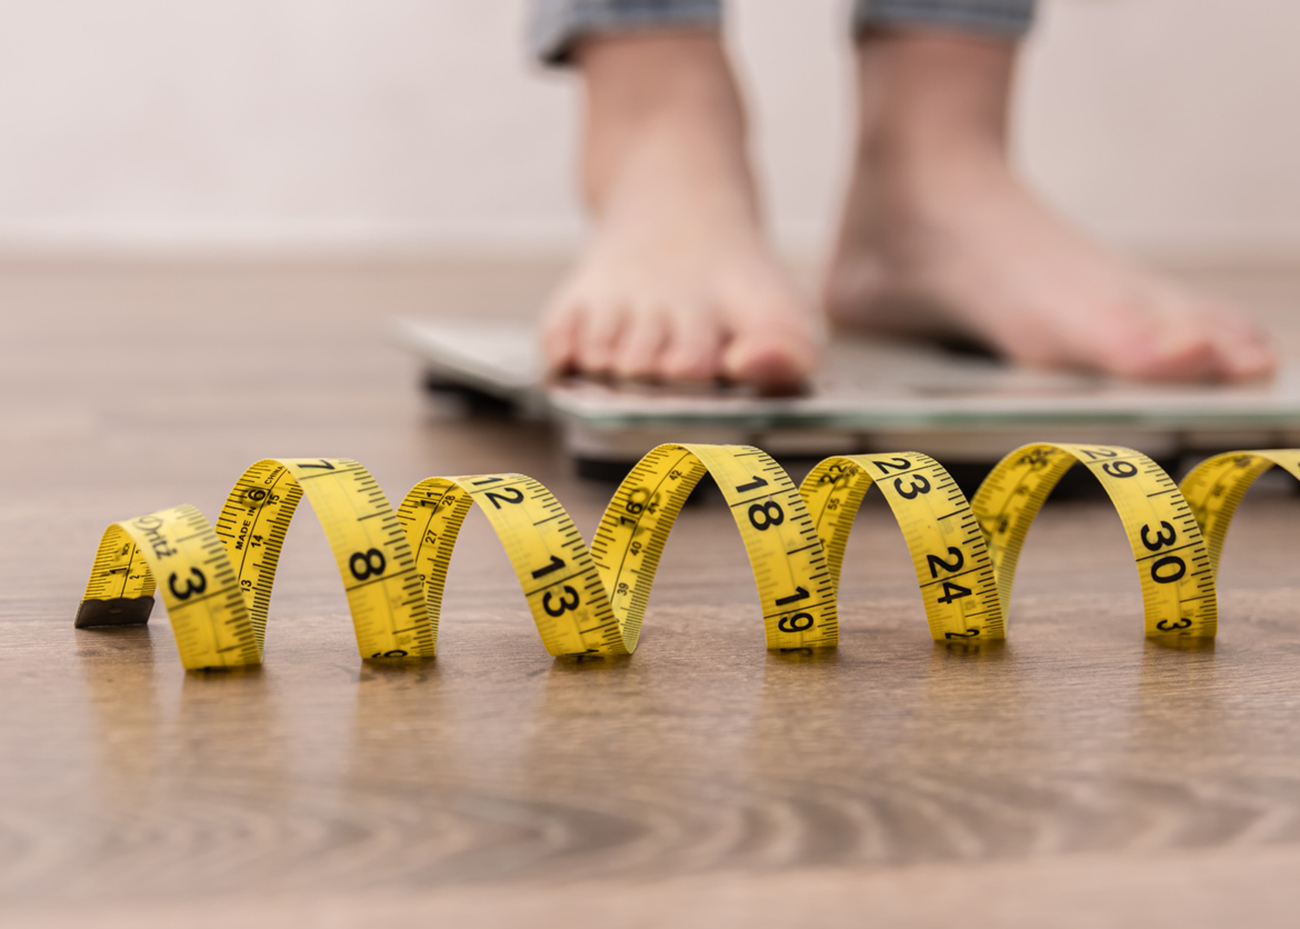 Όλα όσα πρέπει να γνωρίζουμε για την παχυσαρκία και την αντιμετώπισή της